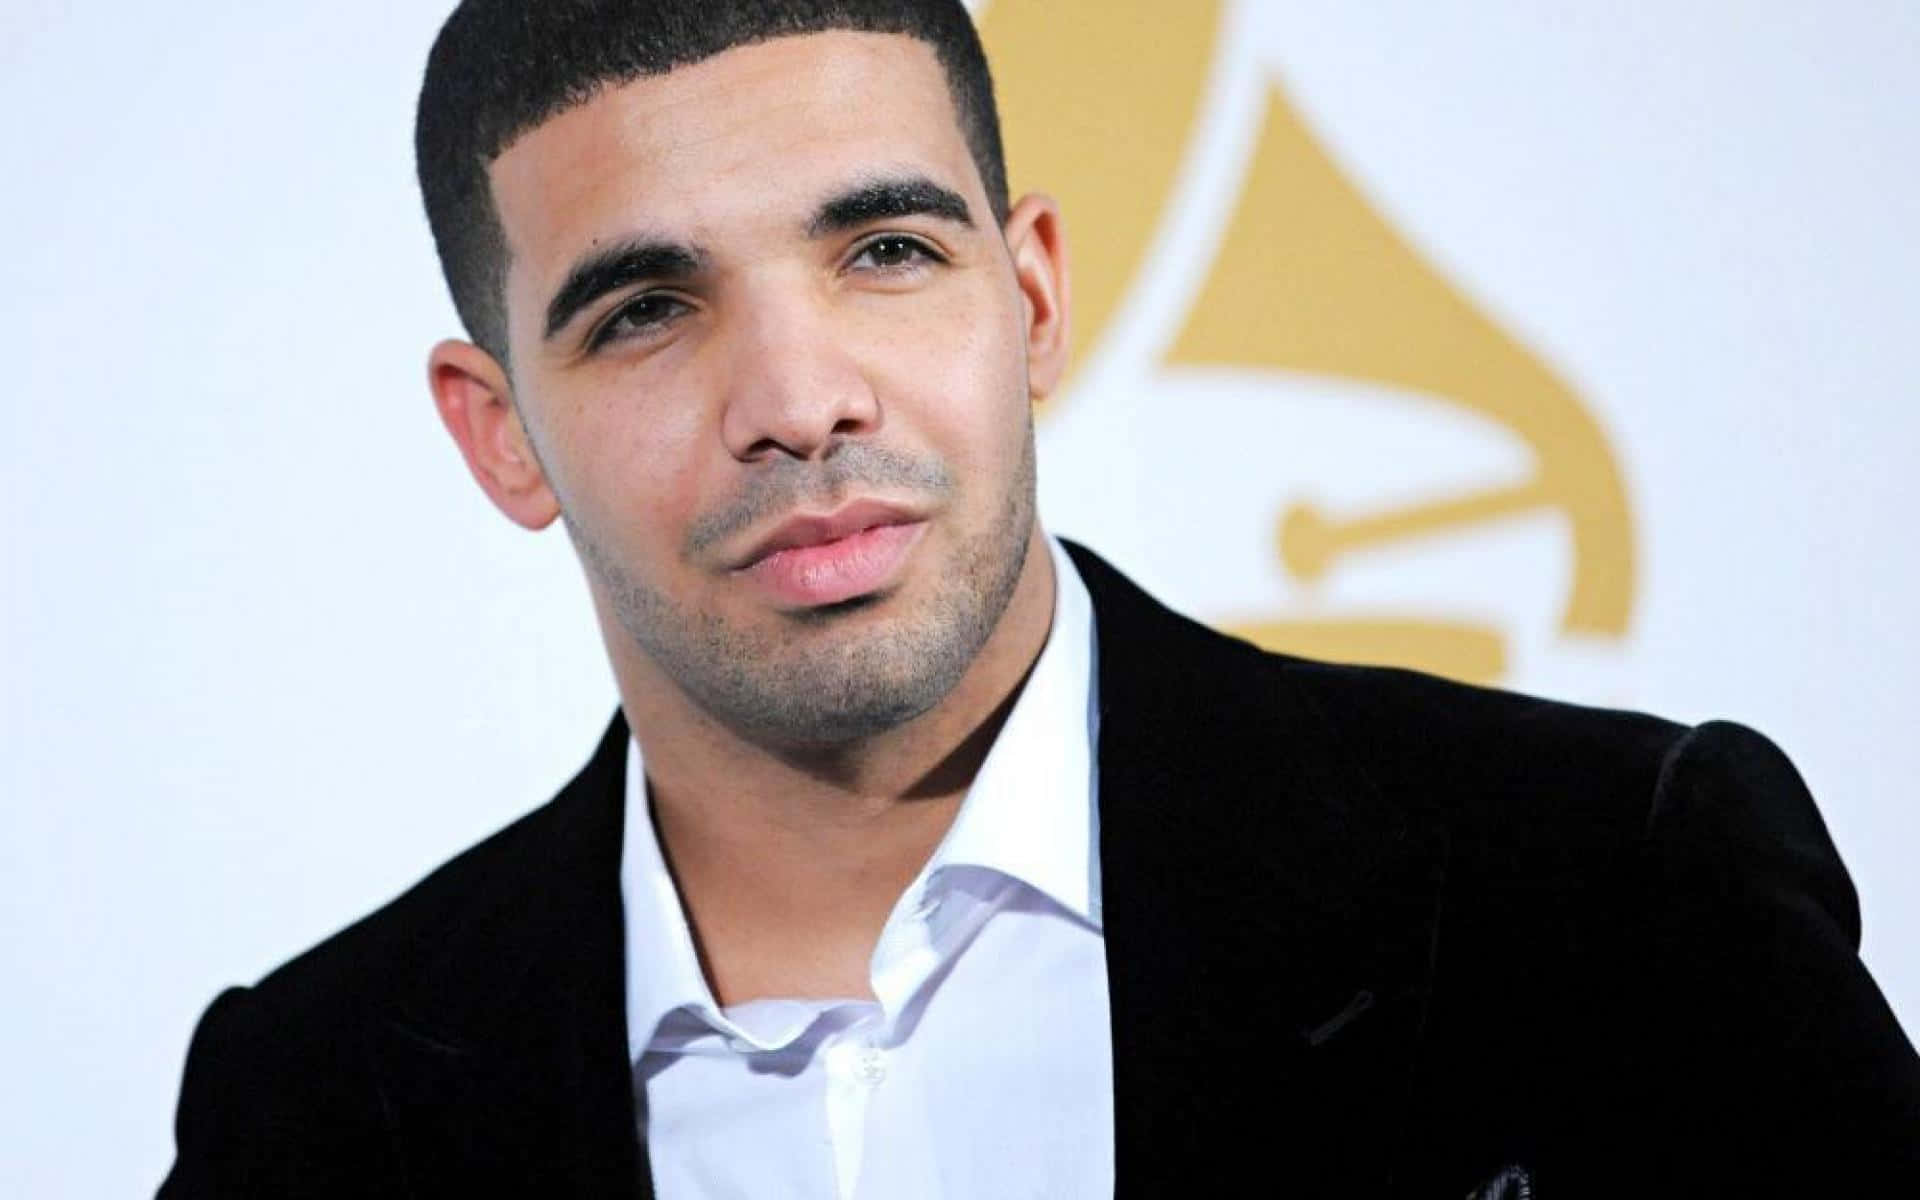 Drakeestá Posando Para Uma Foto No Grammy Awards. Papel de Parede